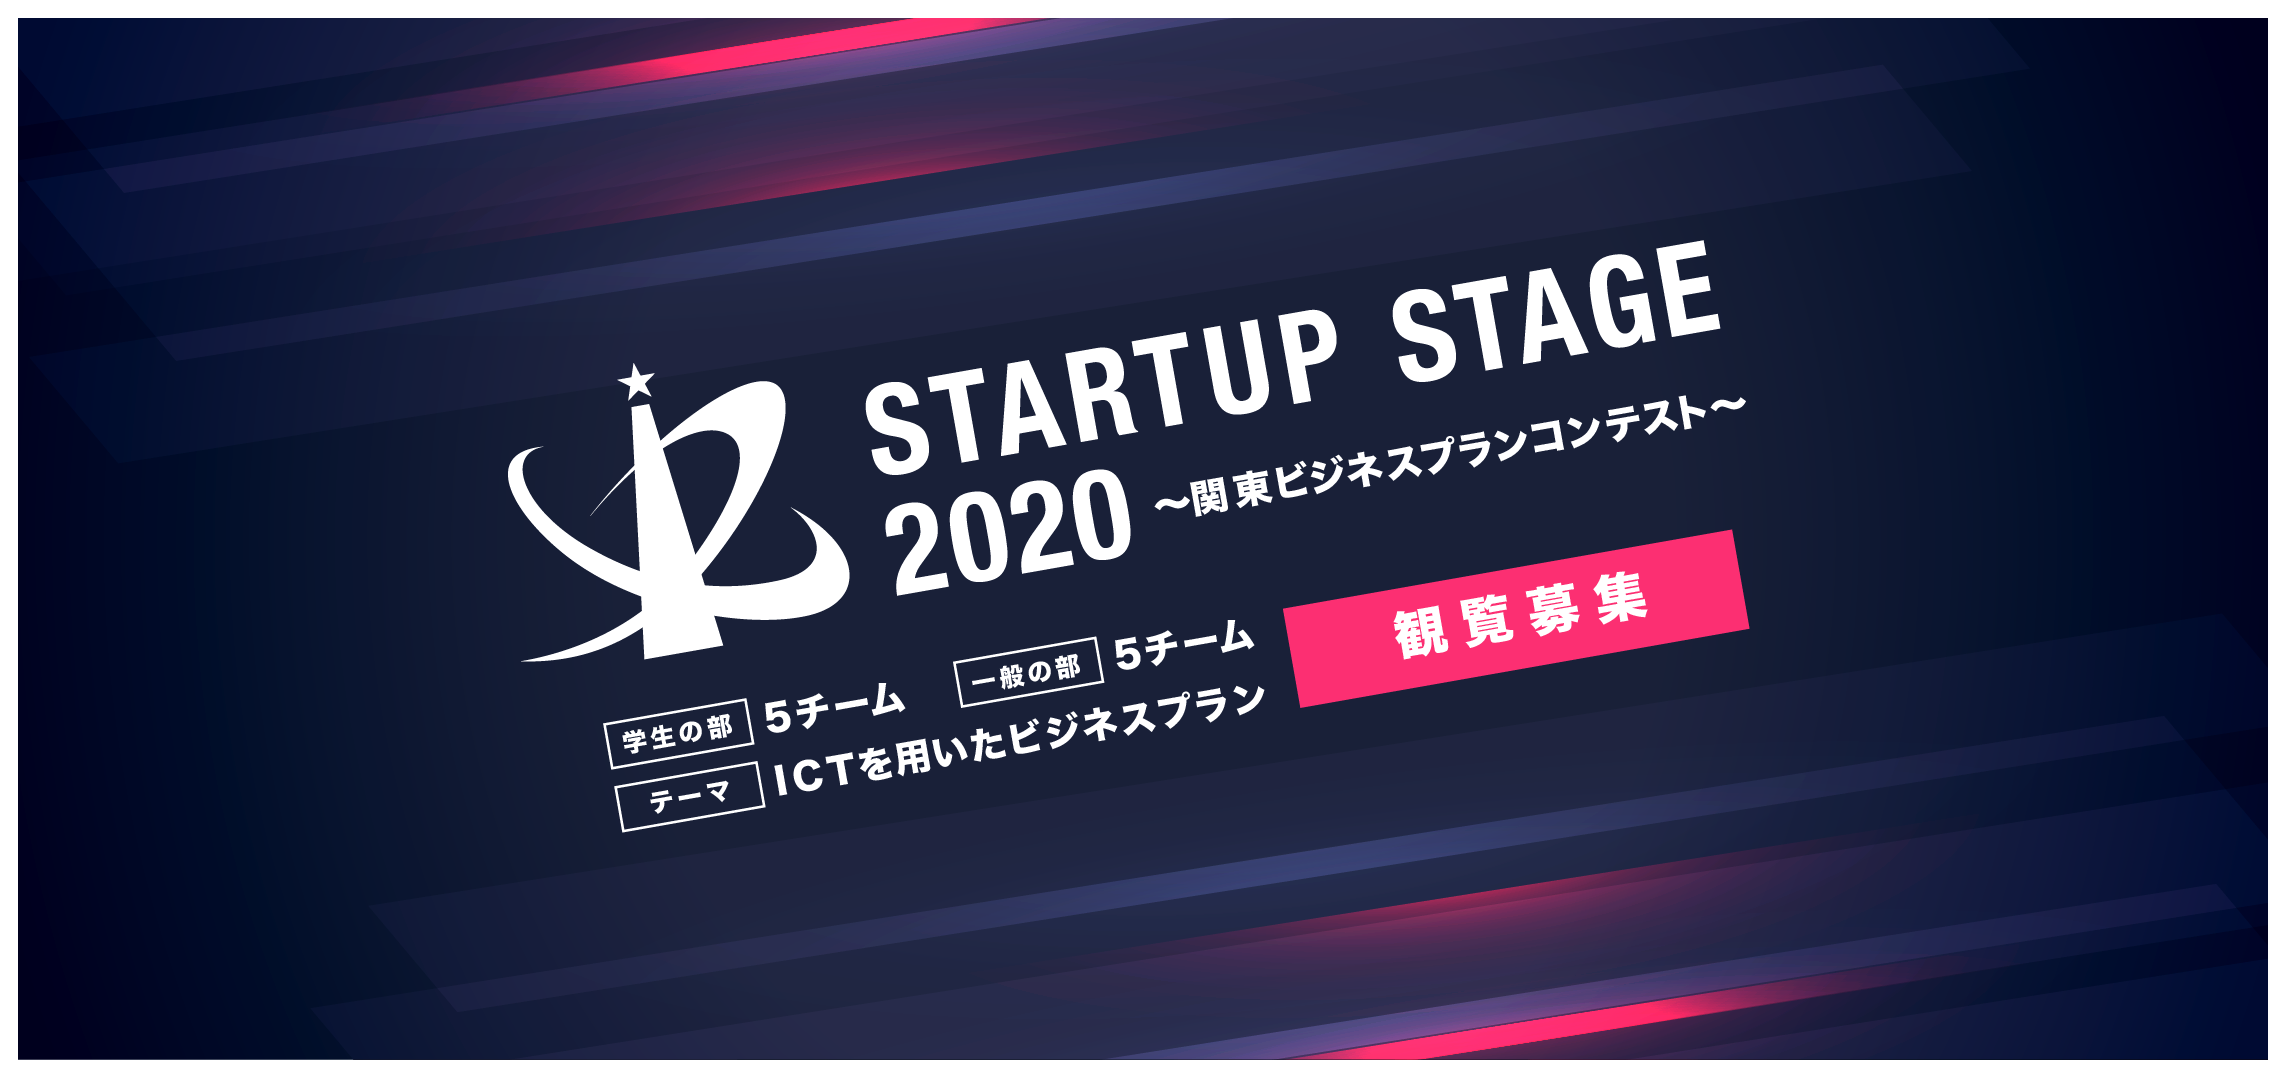 12/19(土)『Startup Stage2020〜関東ビジネスプランコンテスト〜』開催。 オンライン観覧、募集開始。